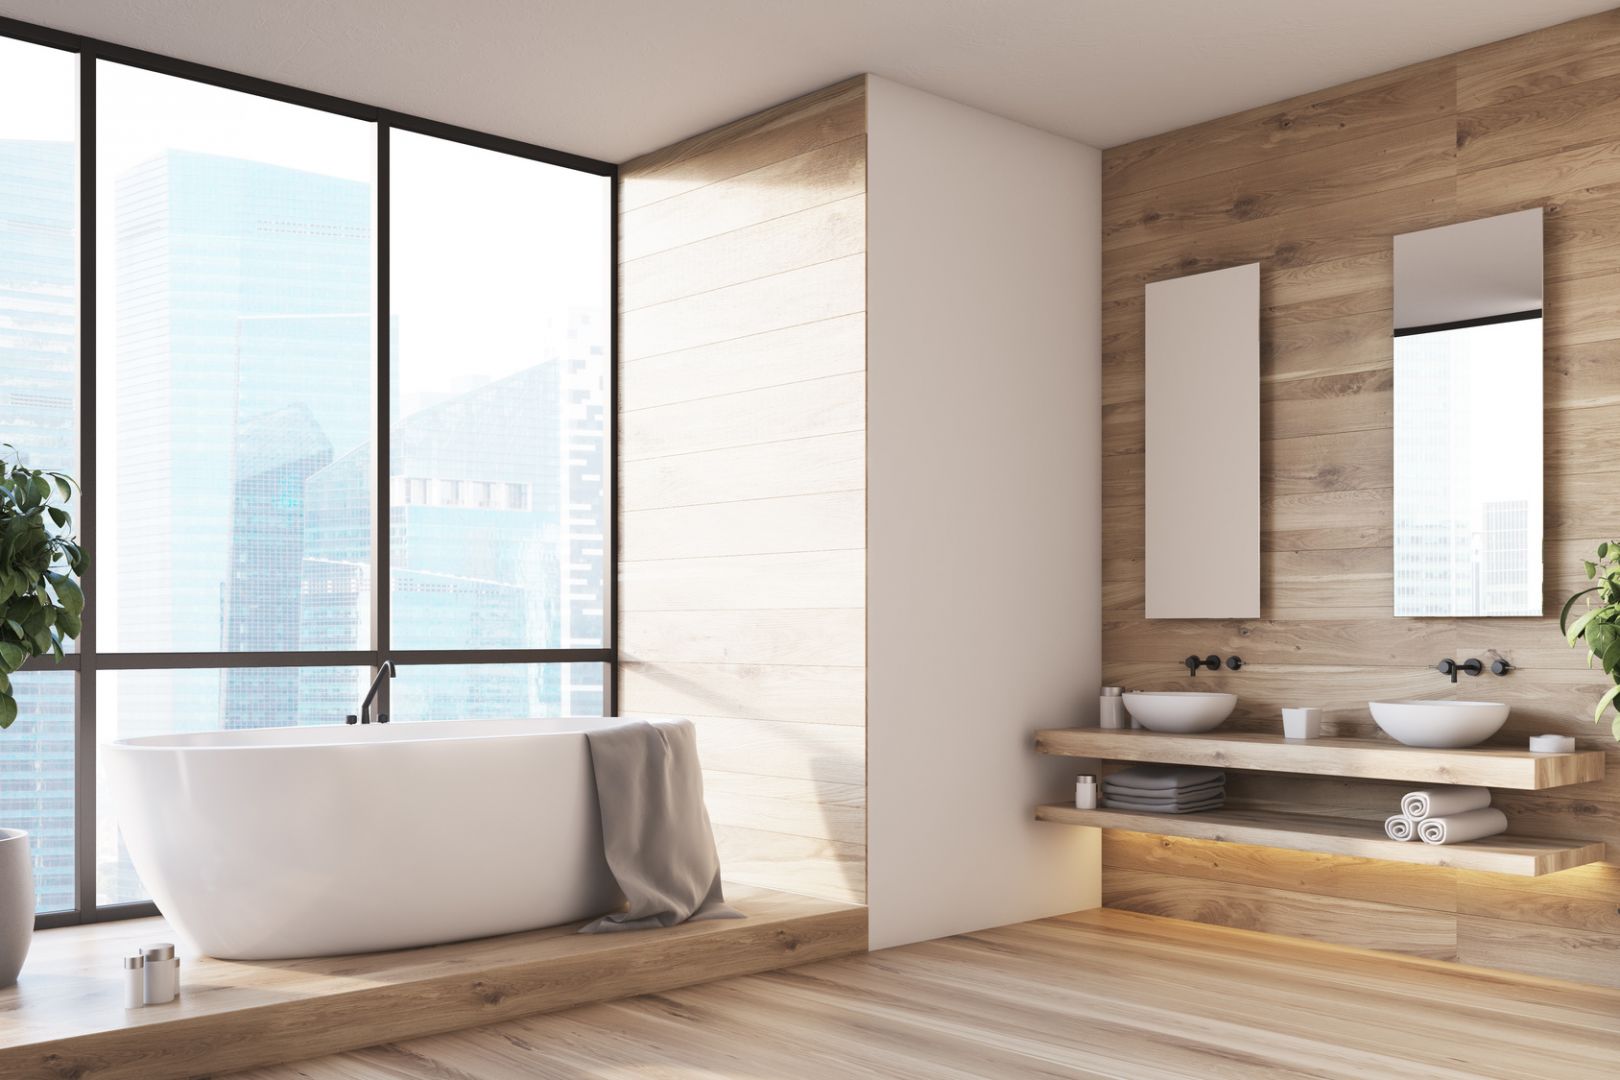 Jednym z obecnie wiodących trendów dekoratorskich jest wykorzystanie naturalnych materiałów w łazience, m.in. drewna. Fot. Bondex